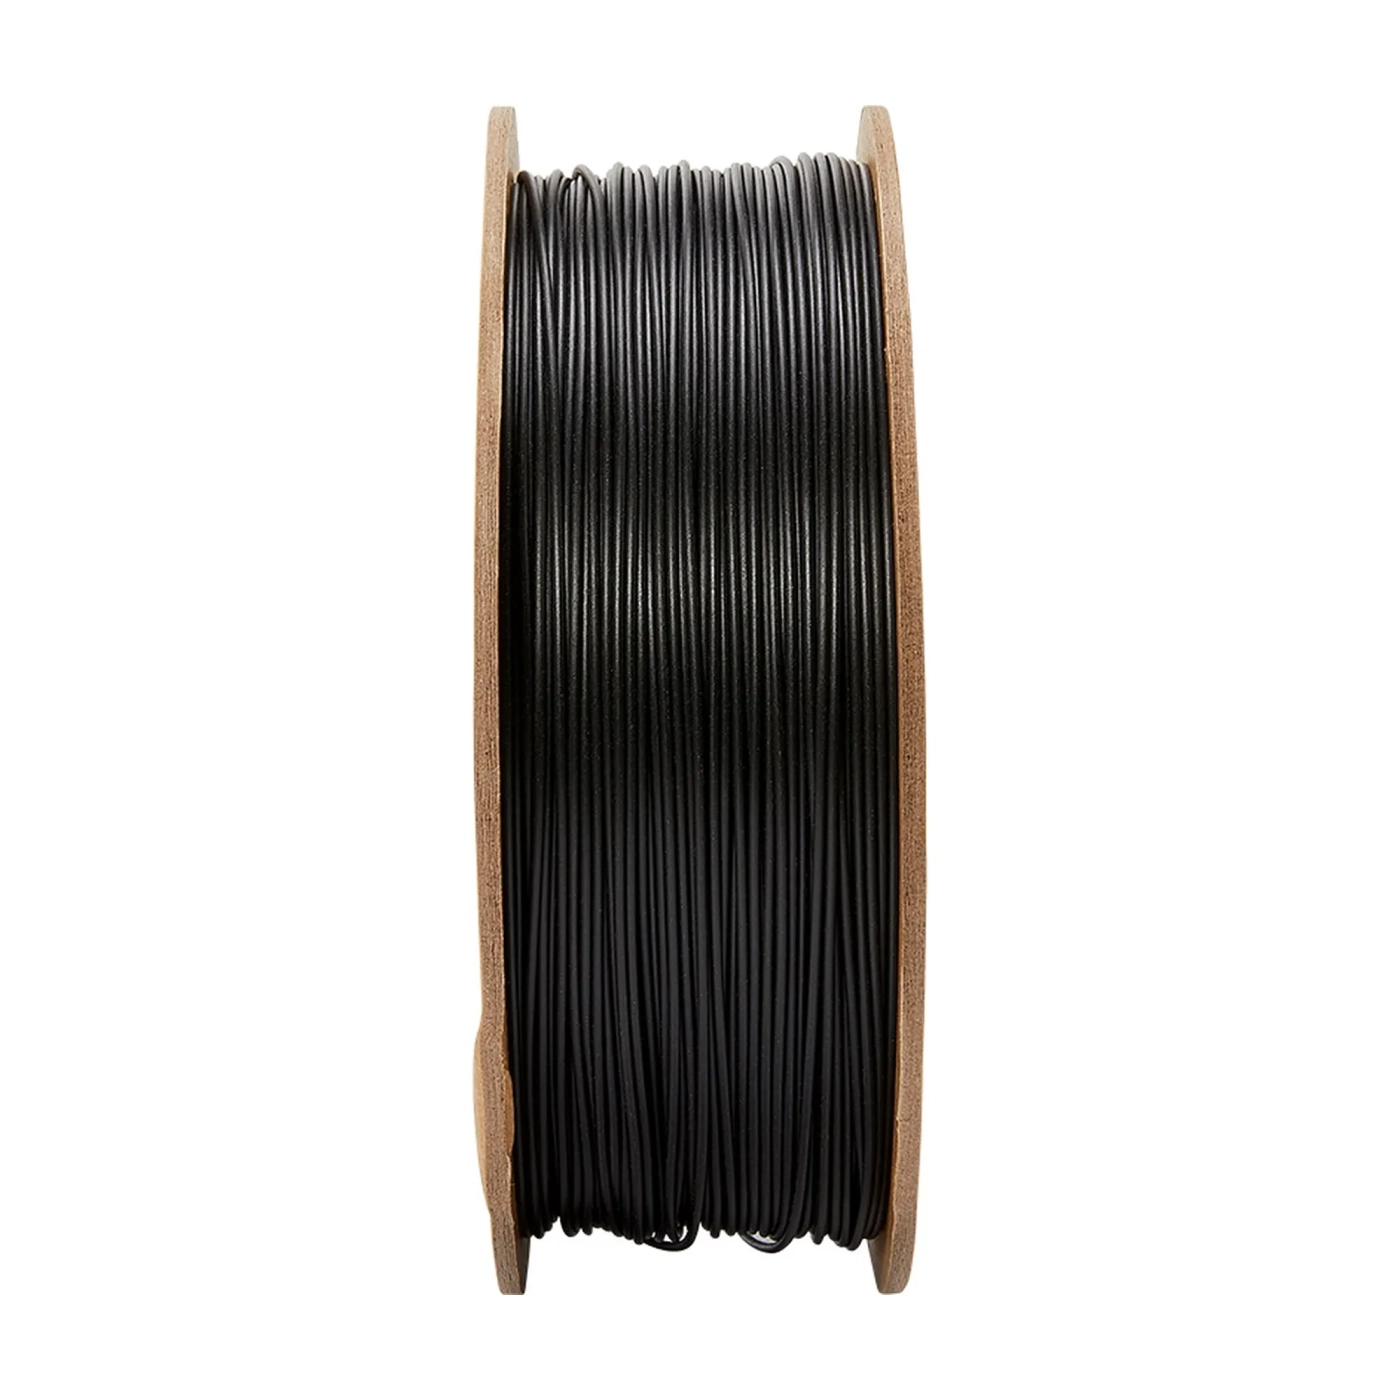 Купить PolyTerra PLA Plus Filament (пластик) для 3D принтера Polymaker 1кг, 1.75мм, черный - фото 2